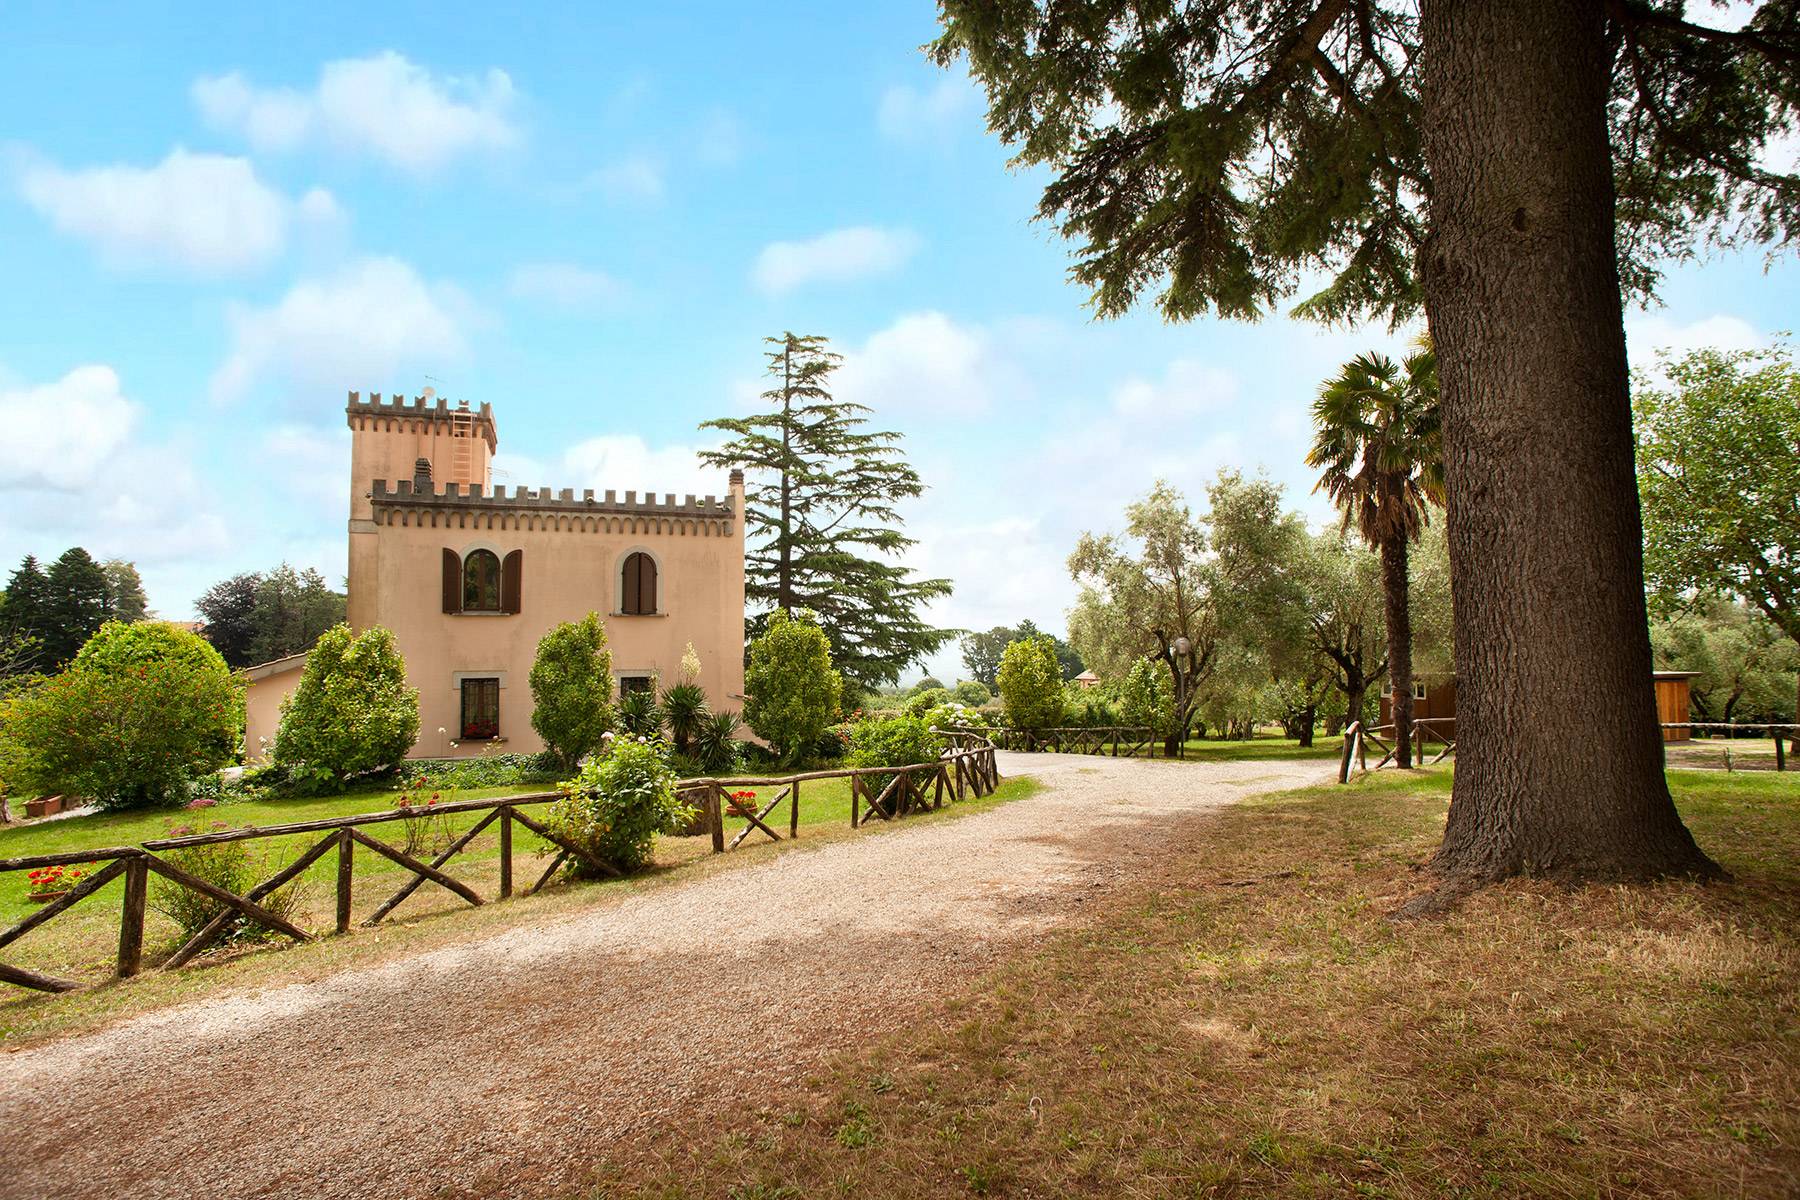 Villa in Vendita a Ronciglione: 5 locali, 500 mq - Foto 4